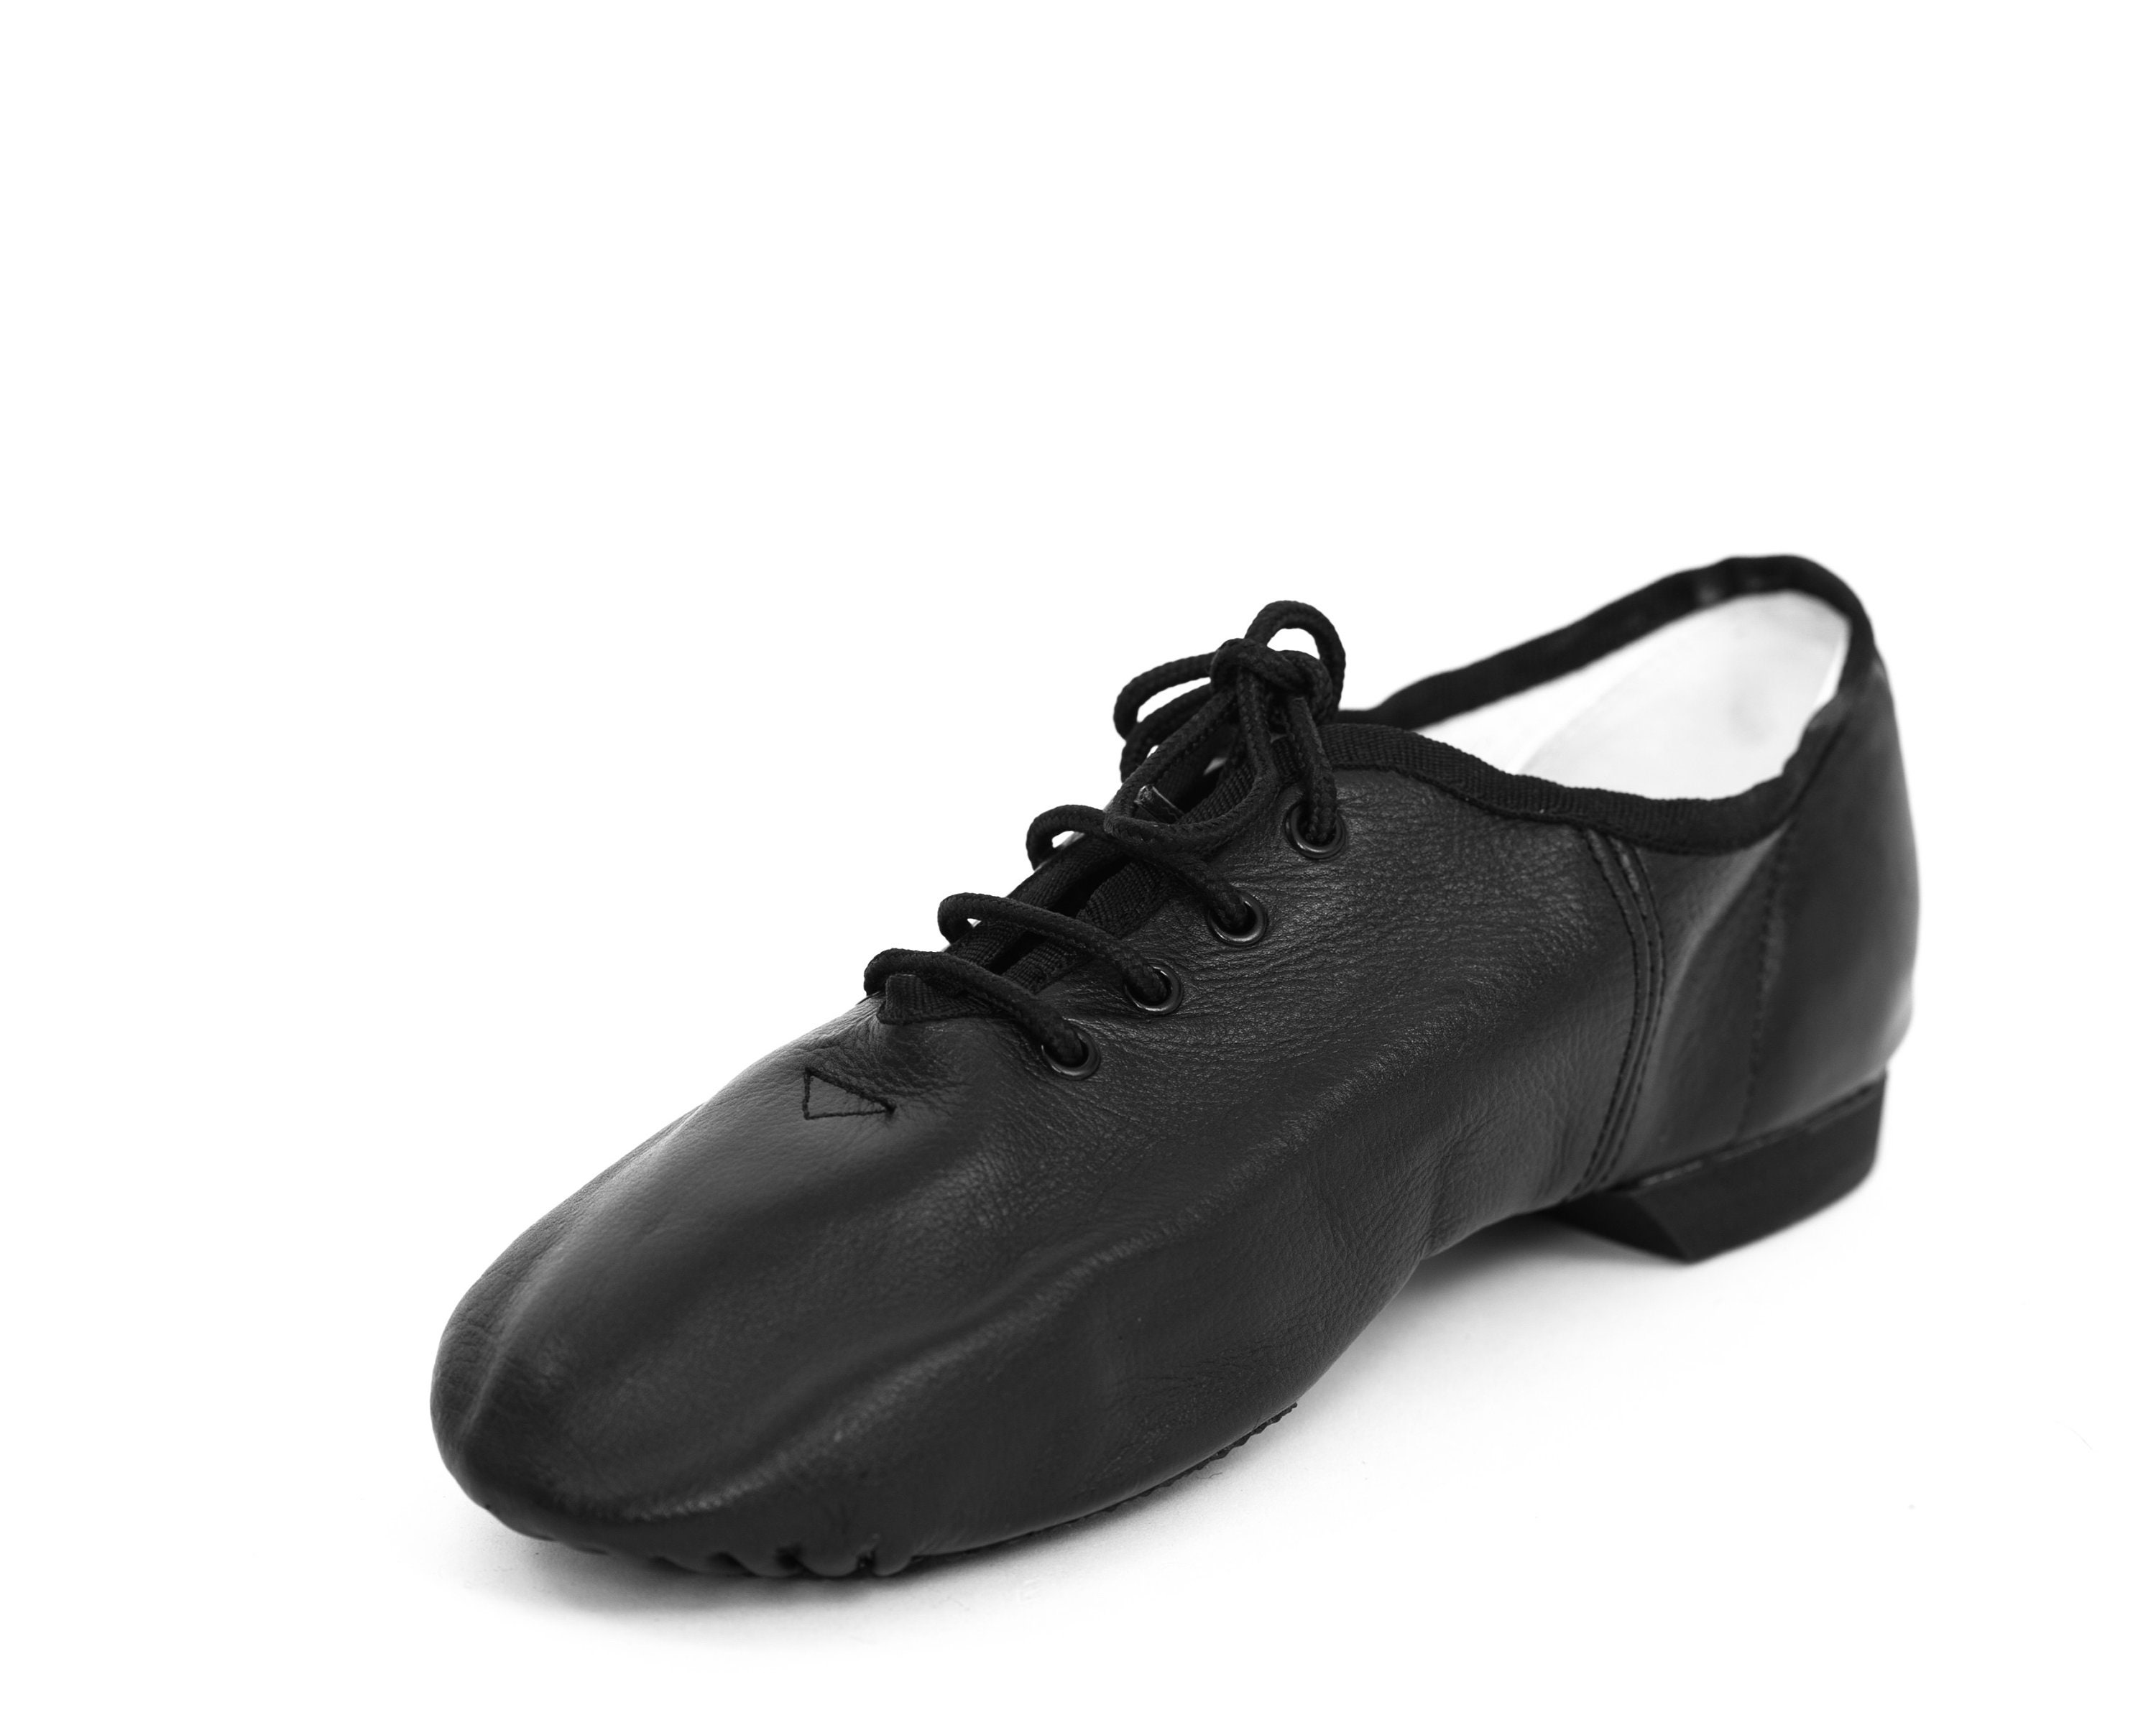 Shoes Mens Shoes Costume Shoes BLACK TAP SHOES Capezio Black Faux Leather Tap Shoes Dancer Dance Size 7.5 Lace Up Performance Costume Stage Showgirl Unisex Men's Women's 